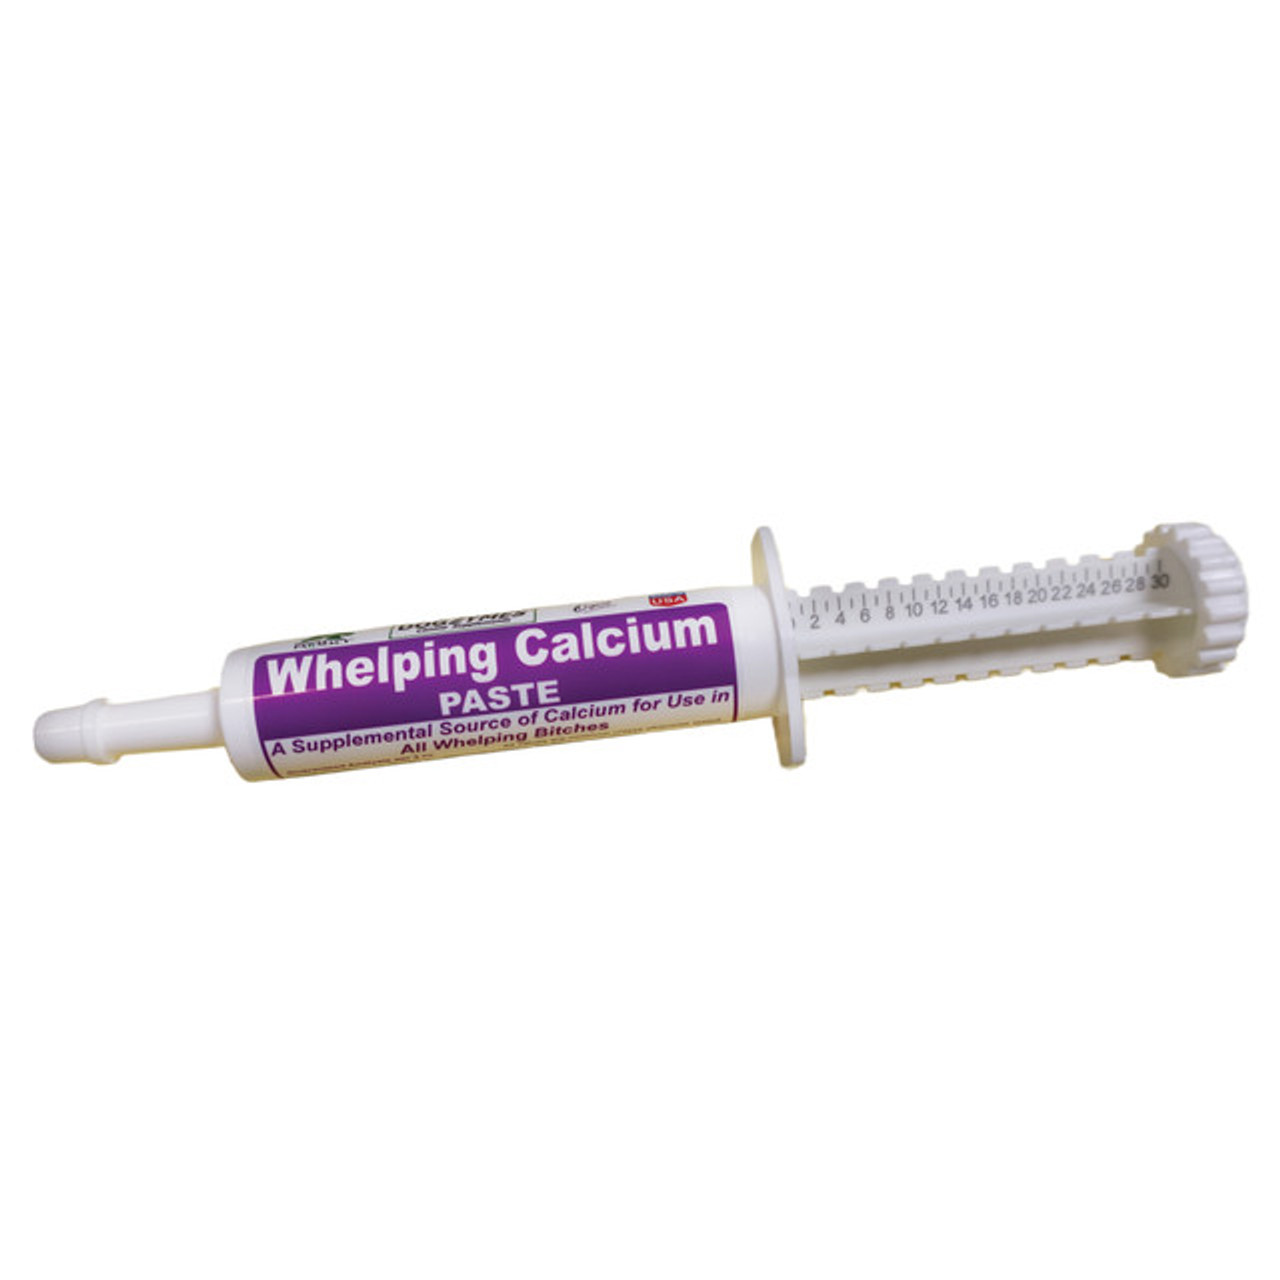 Whelping Calcium Paste